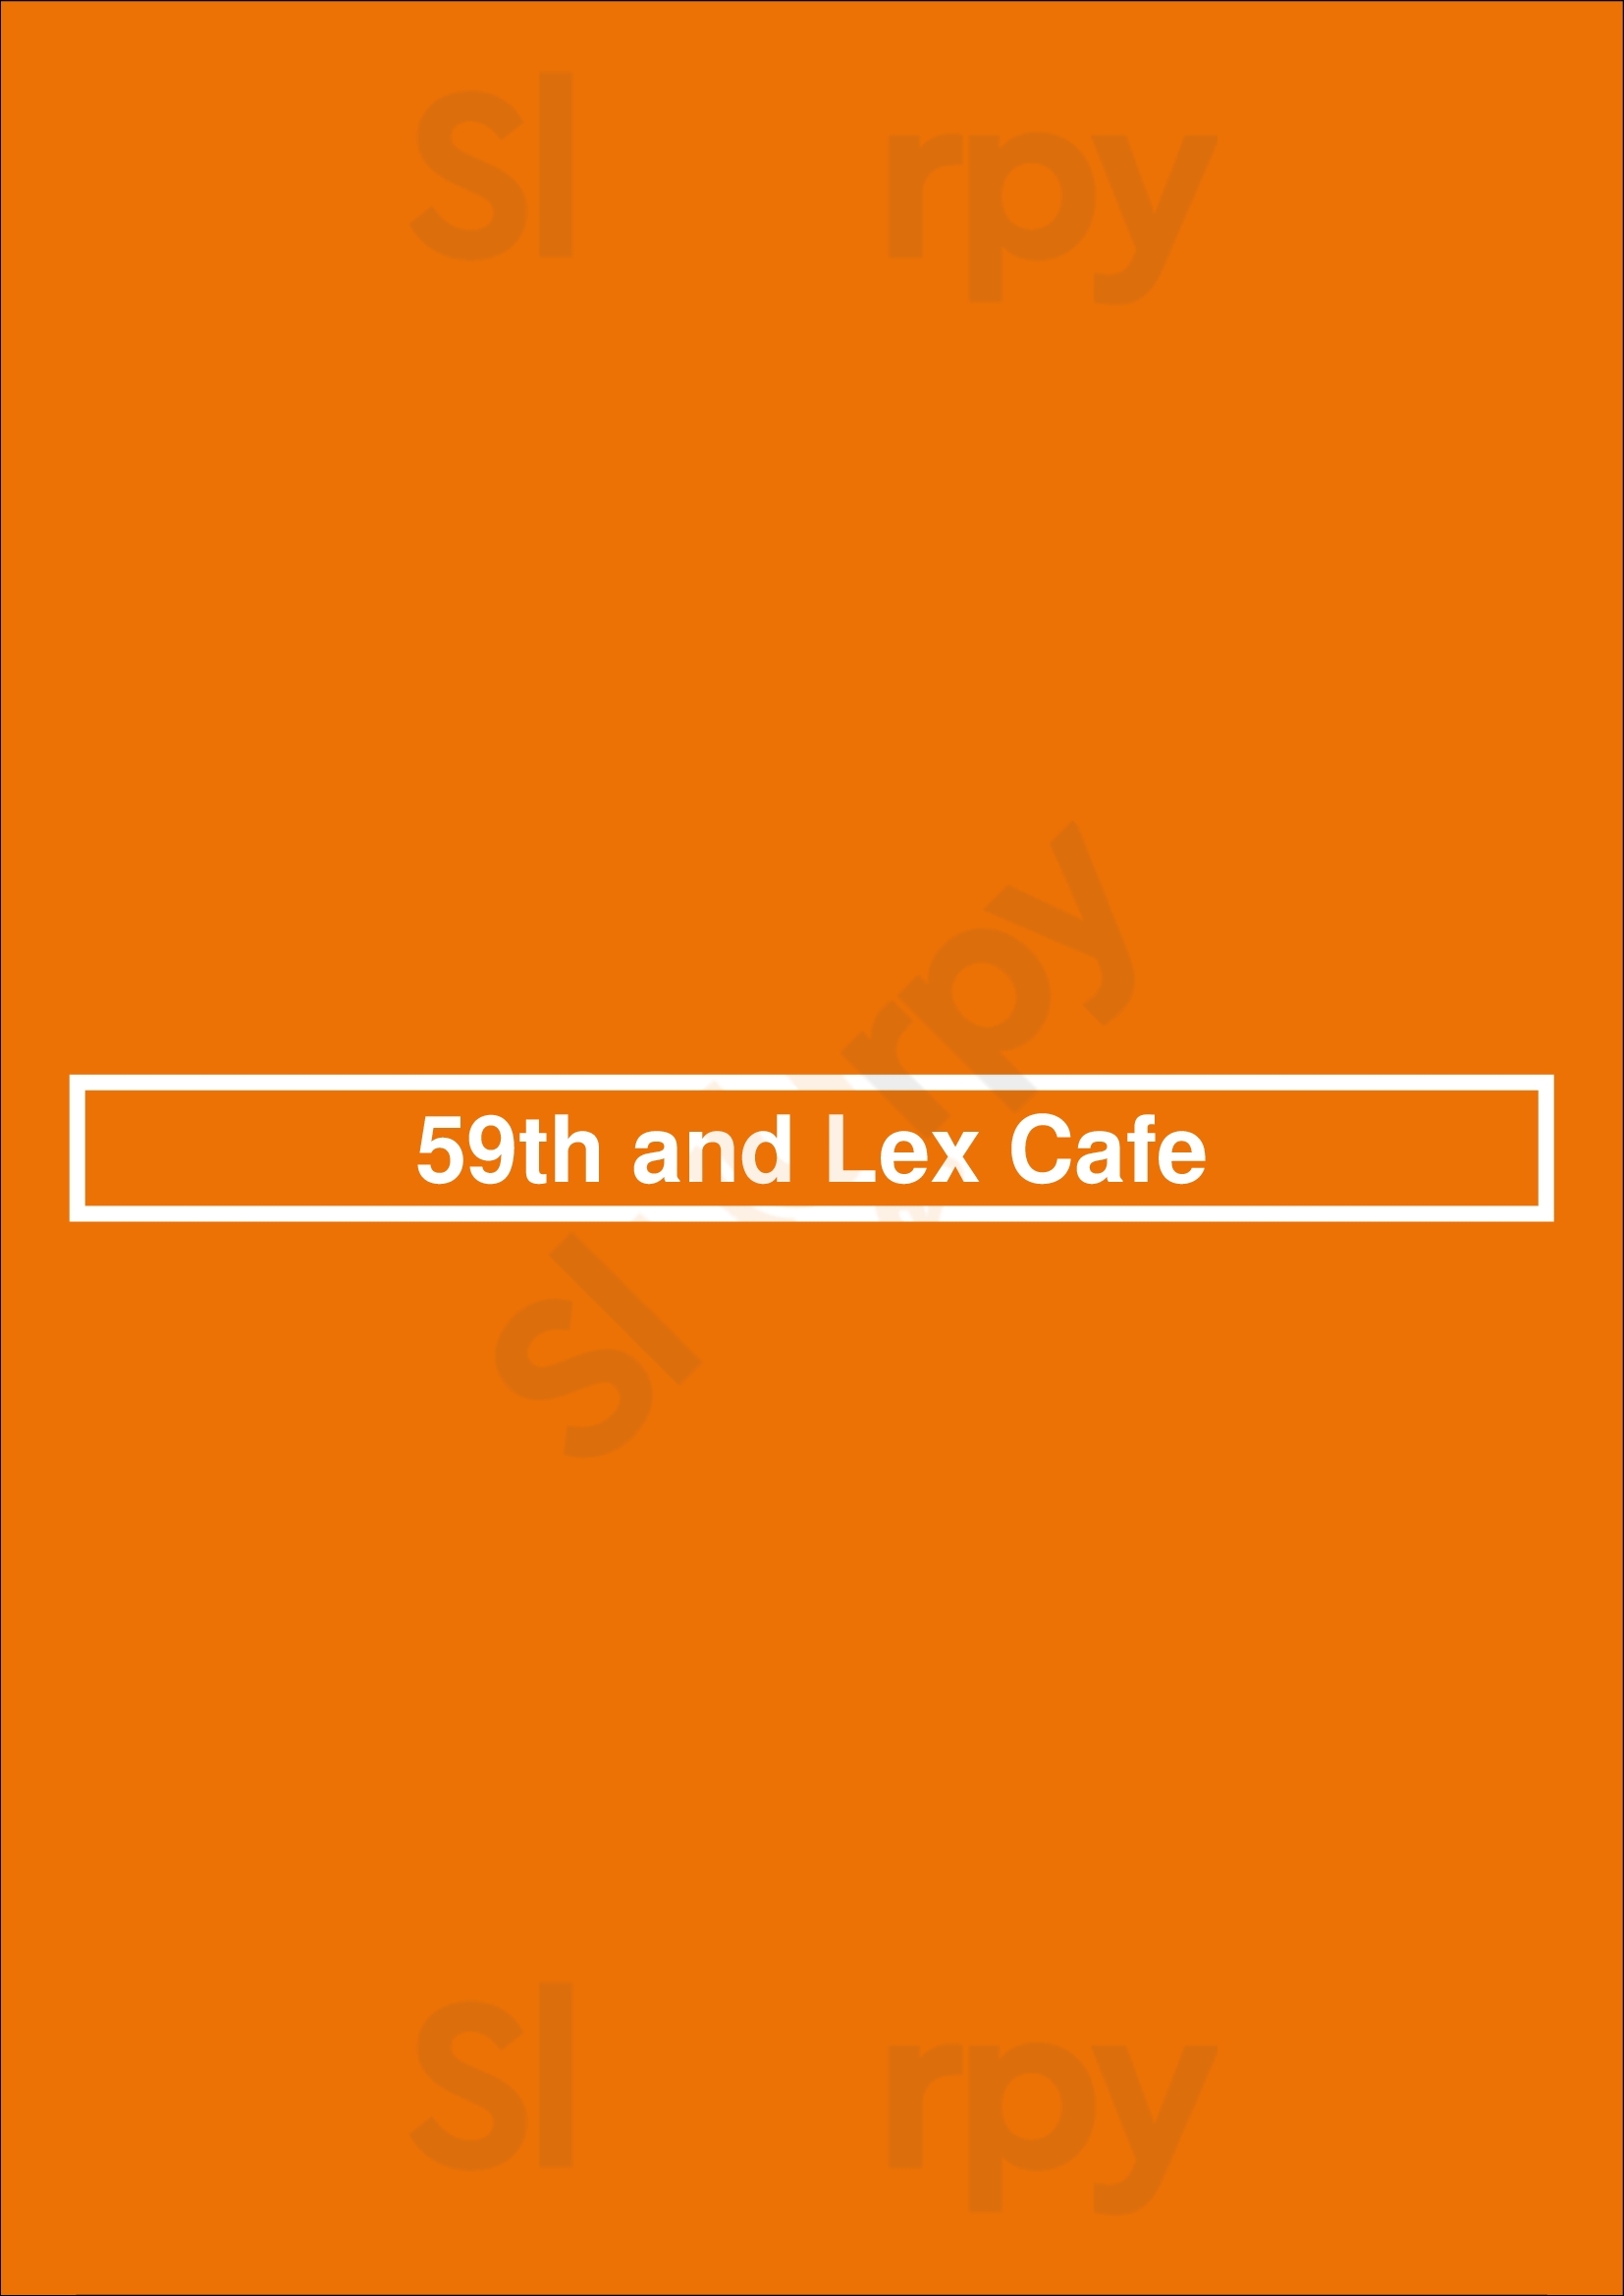 59th And Lex Cafe San Diego Menu - 1